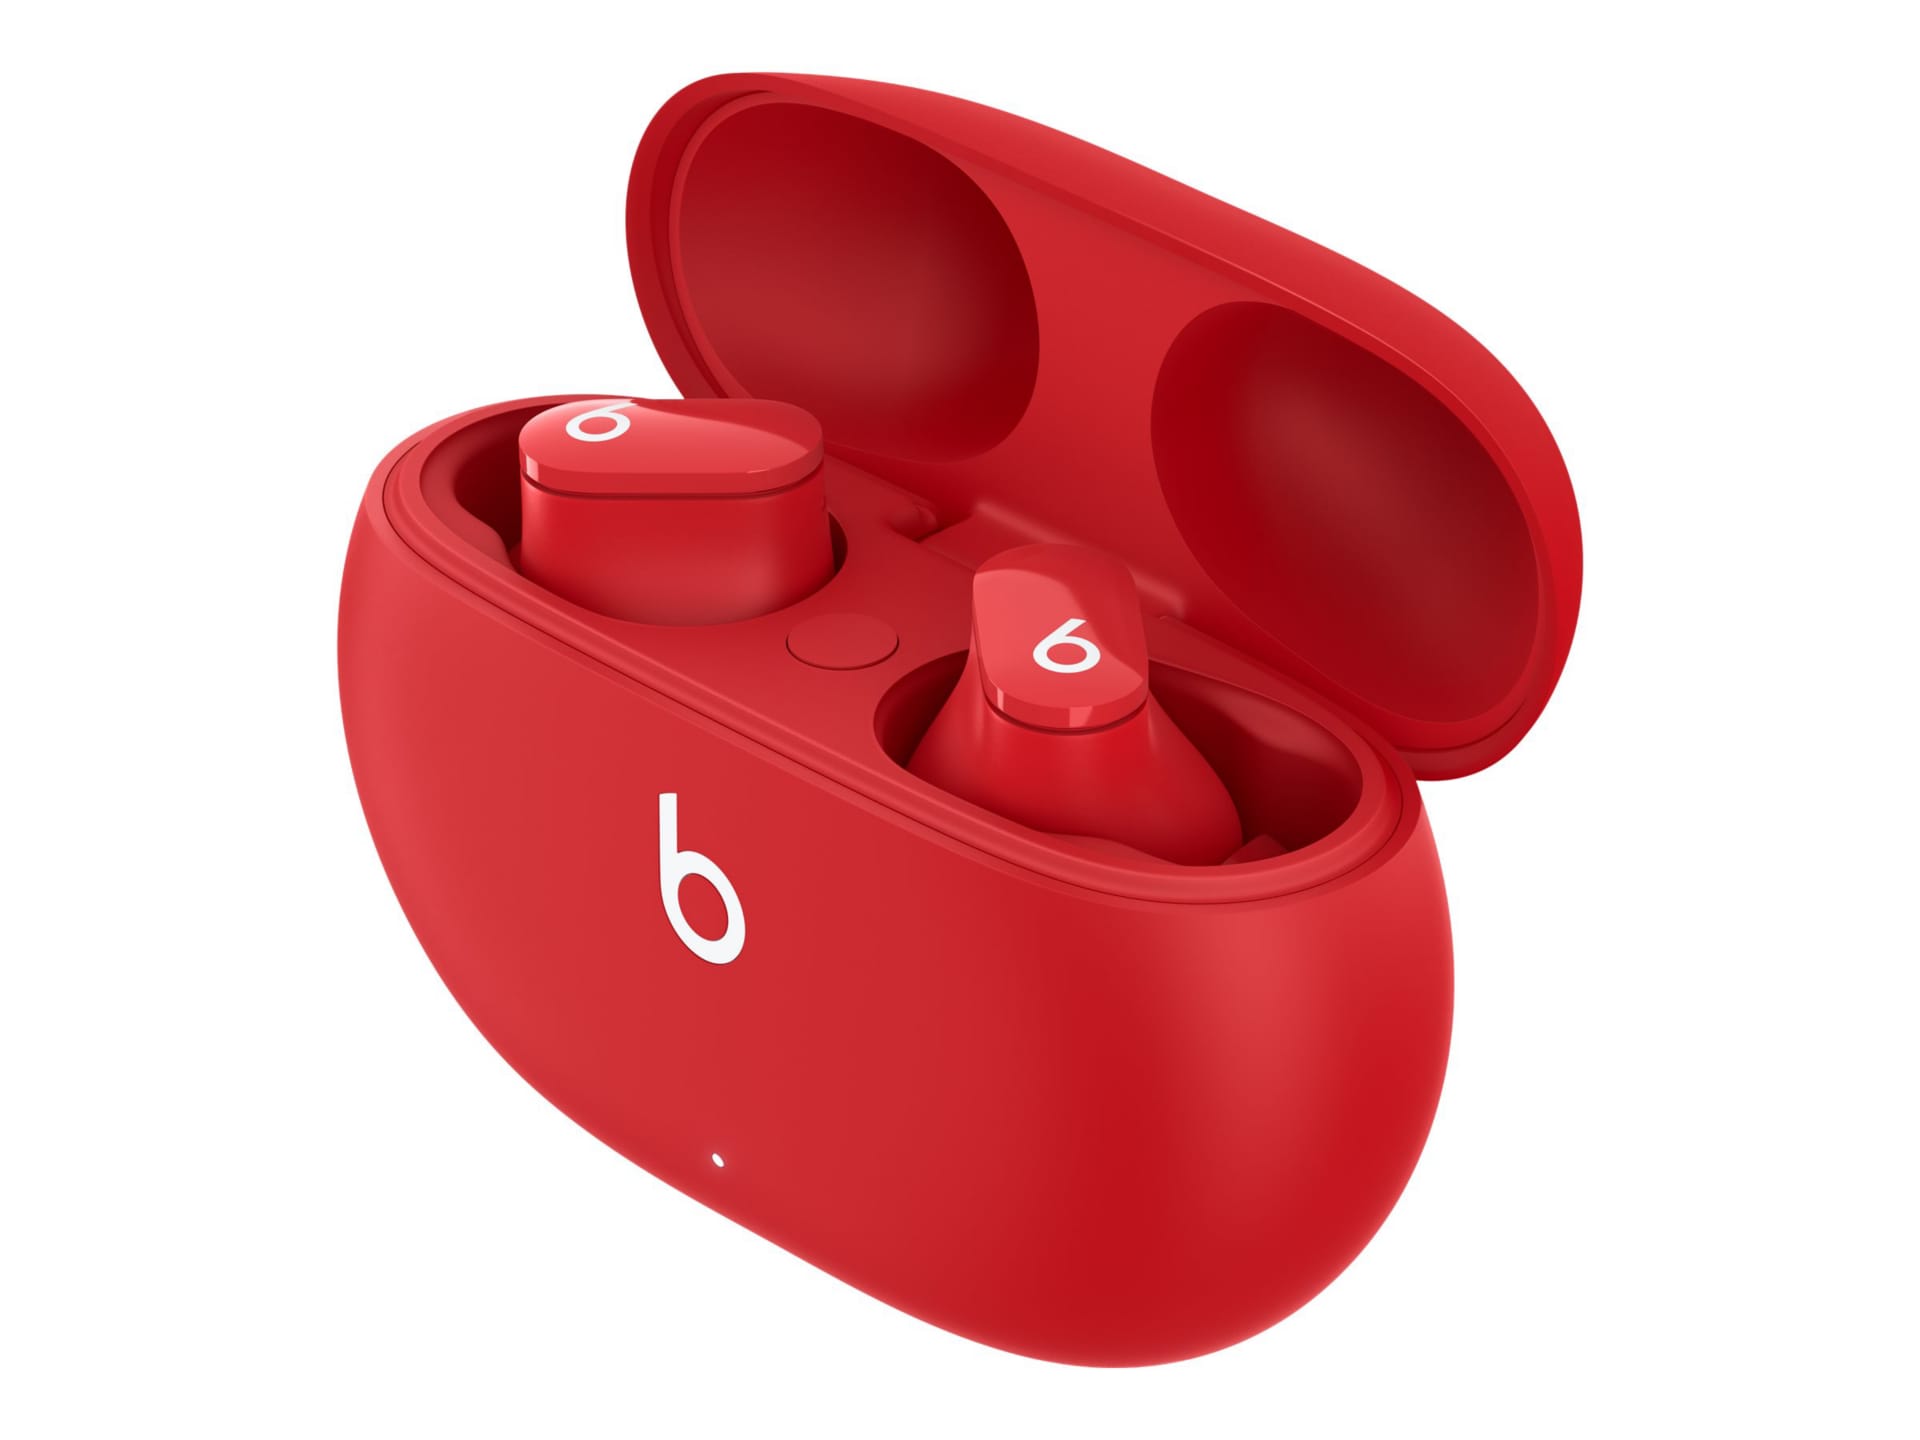 Beats Studio Buds Totally Wireless Earphones Case Replacement